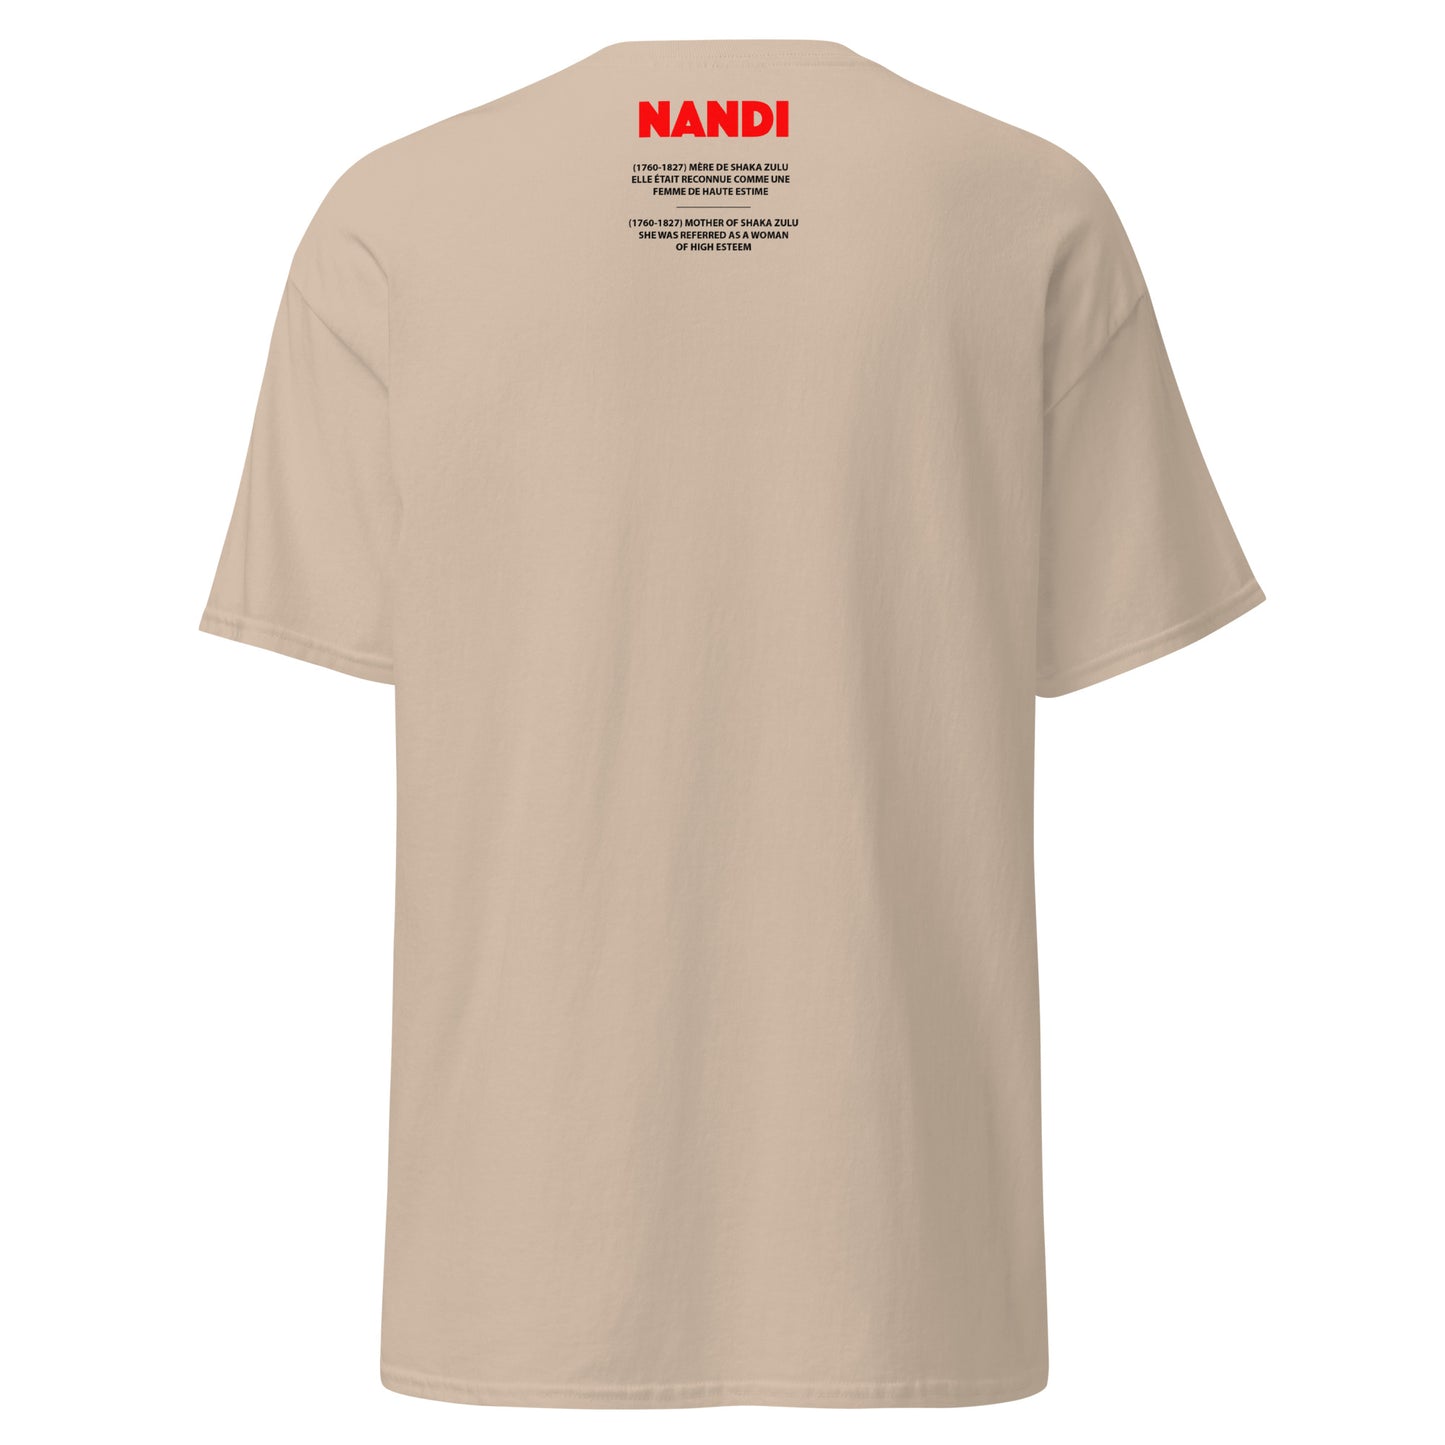 NANDI (T-Shirt Miroir)